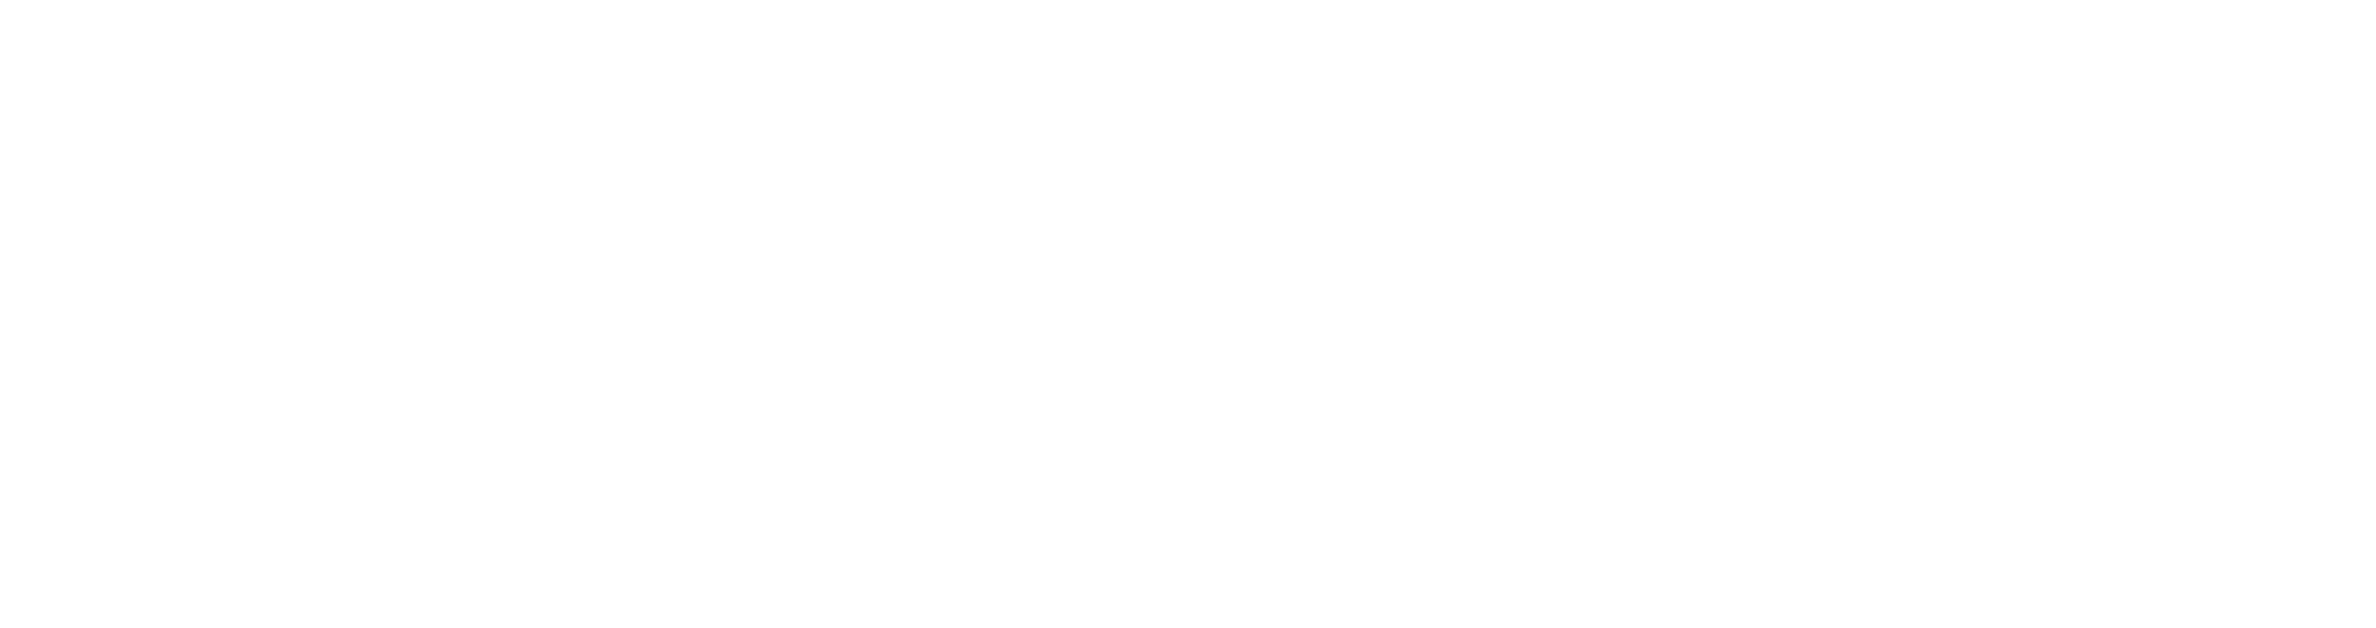 Cyclescheme logo